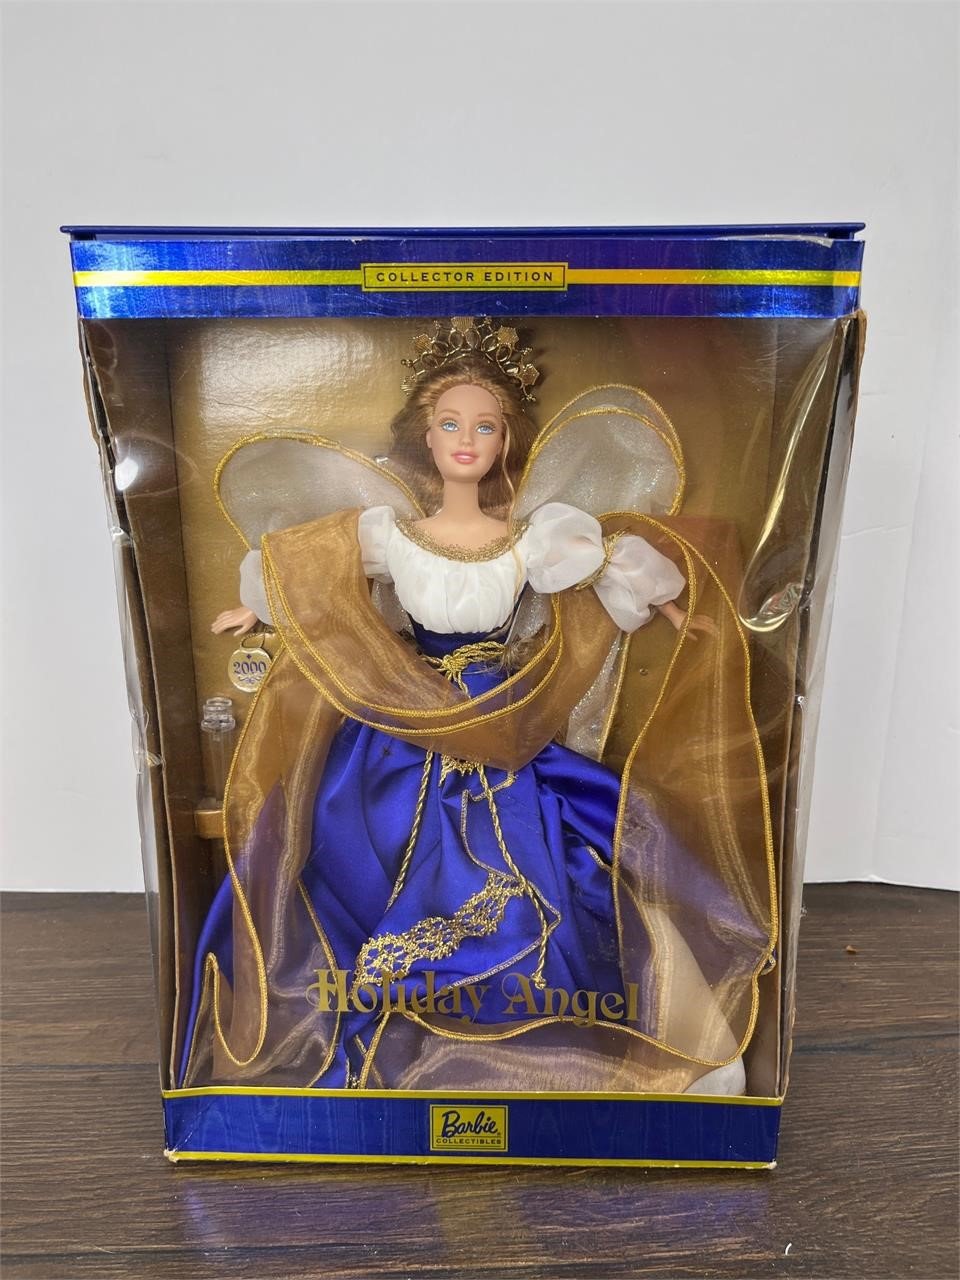 Vintage Holiday Angel Barbie in Box